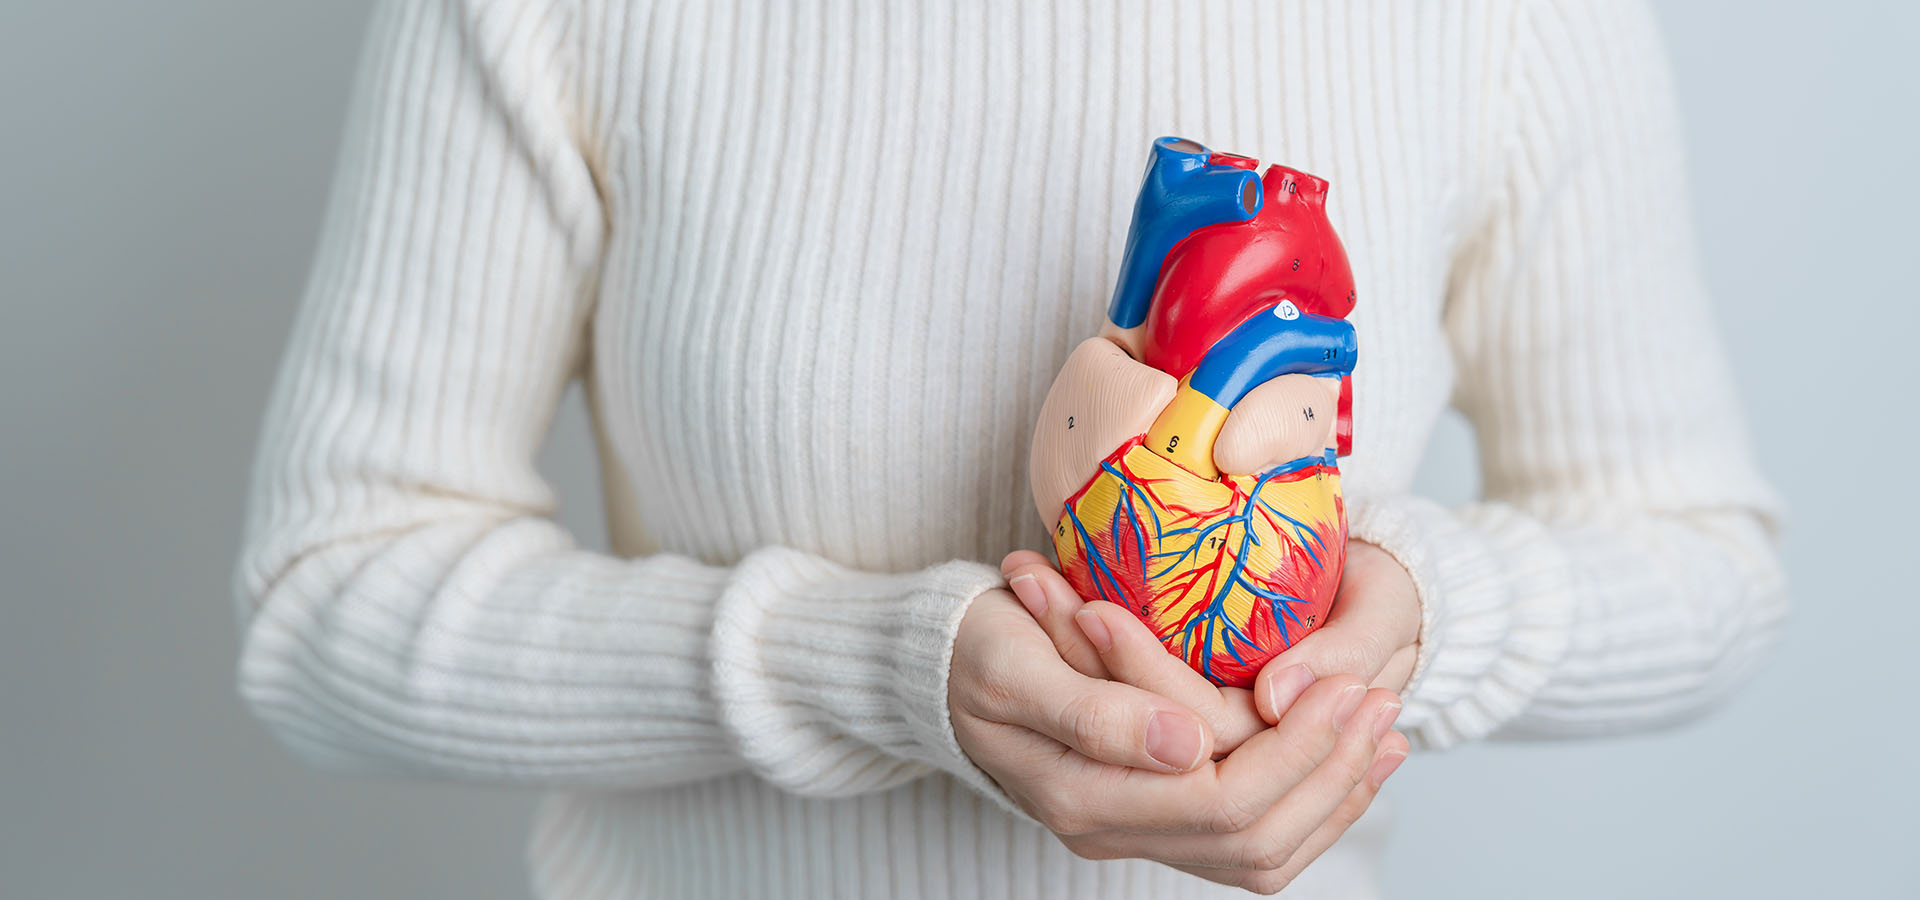 Bild einer Frau, die ein medizinisches Modell eines Herzens hält, um die Verbindung zwischen Omega-3 und Herzgesundheit zu illustrieren.